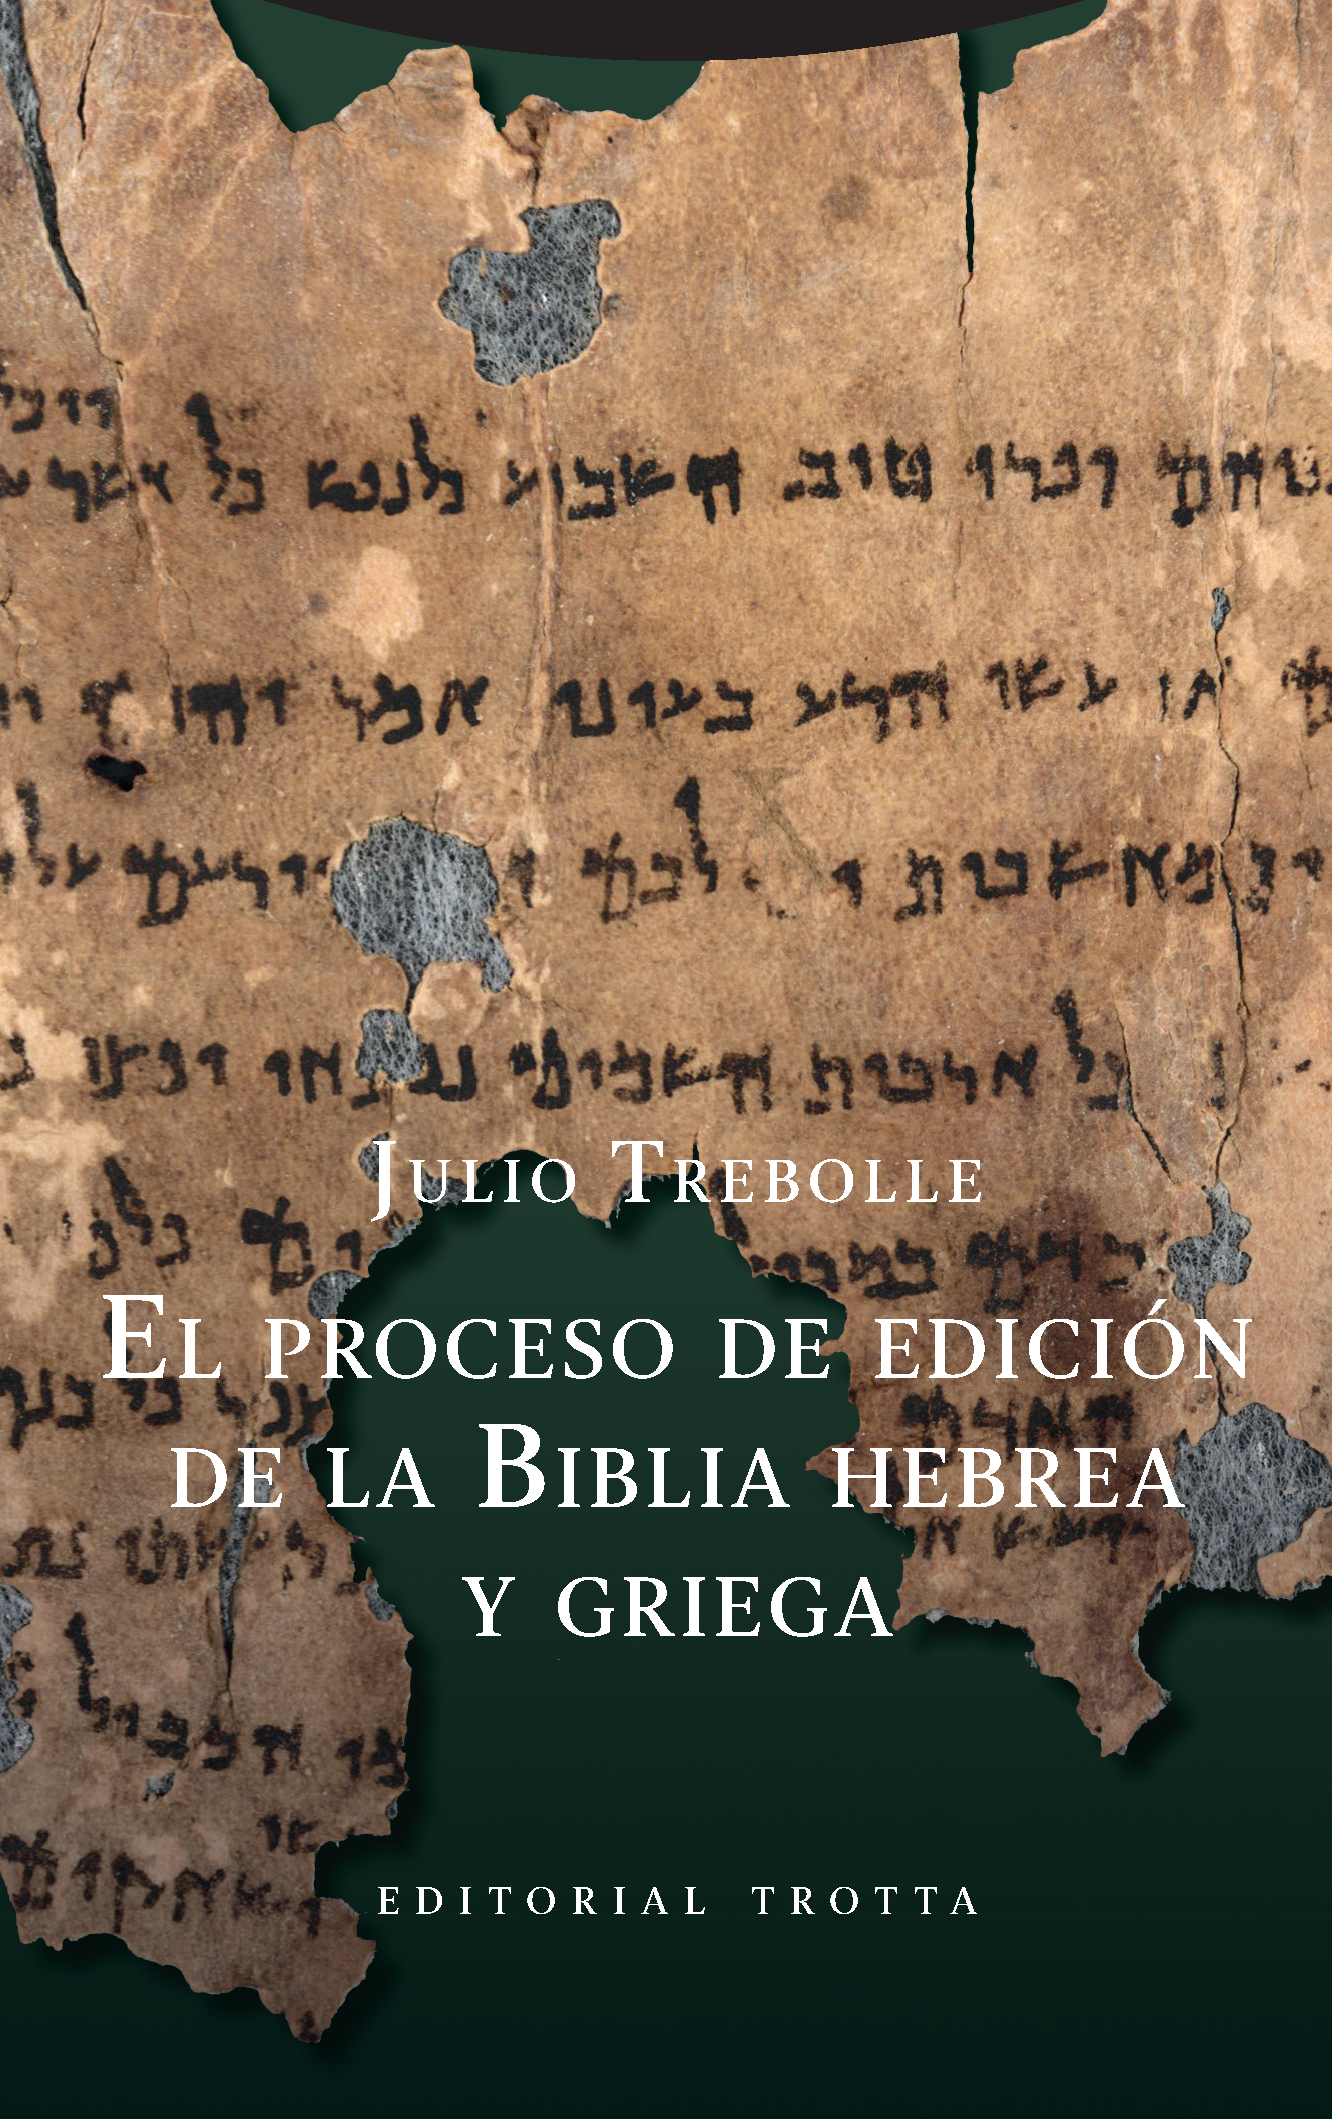 El proceso de edición de la Biblia hebrea y griega